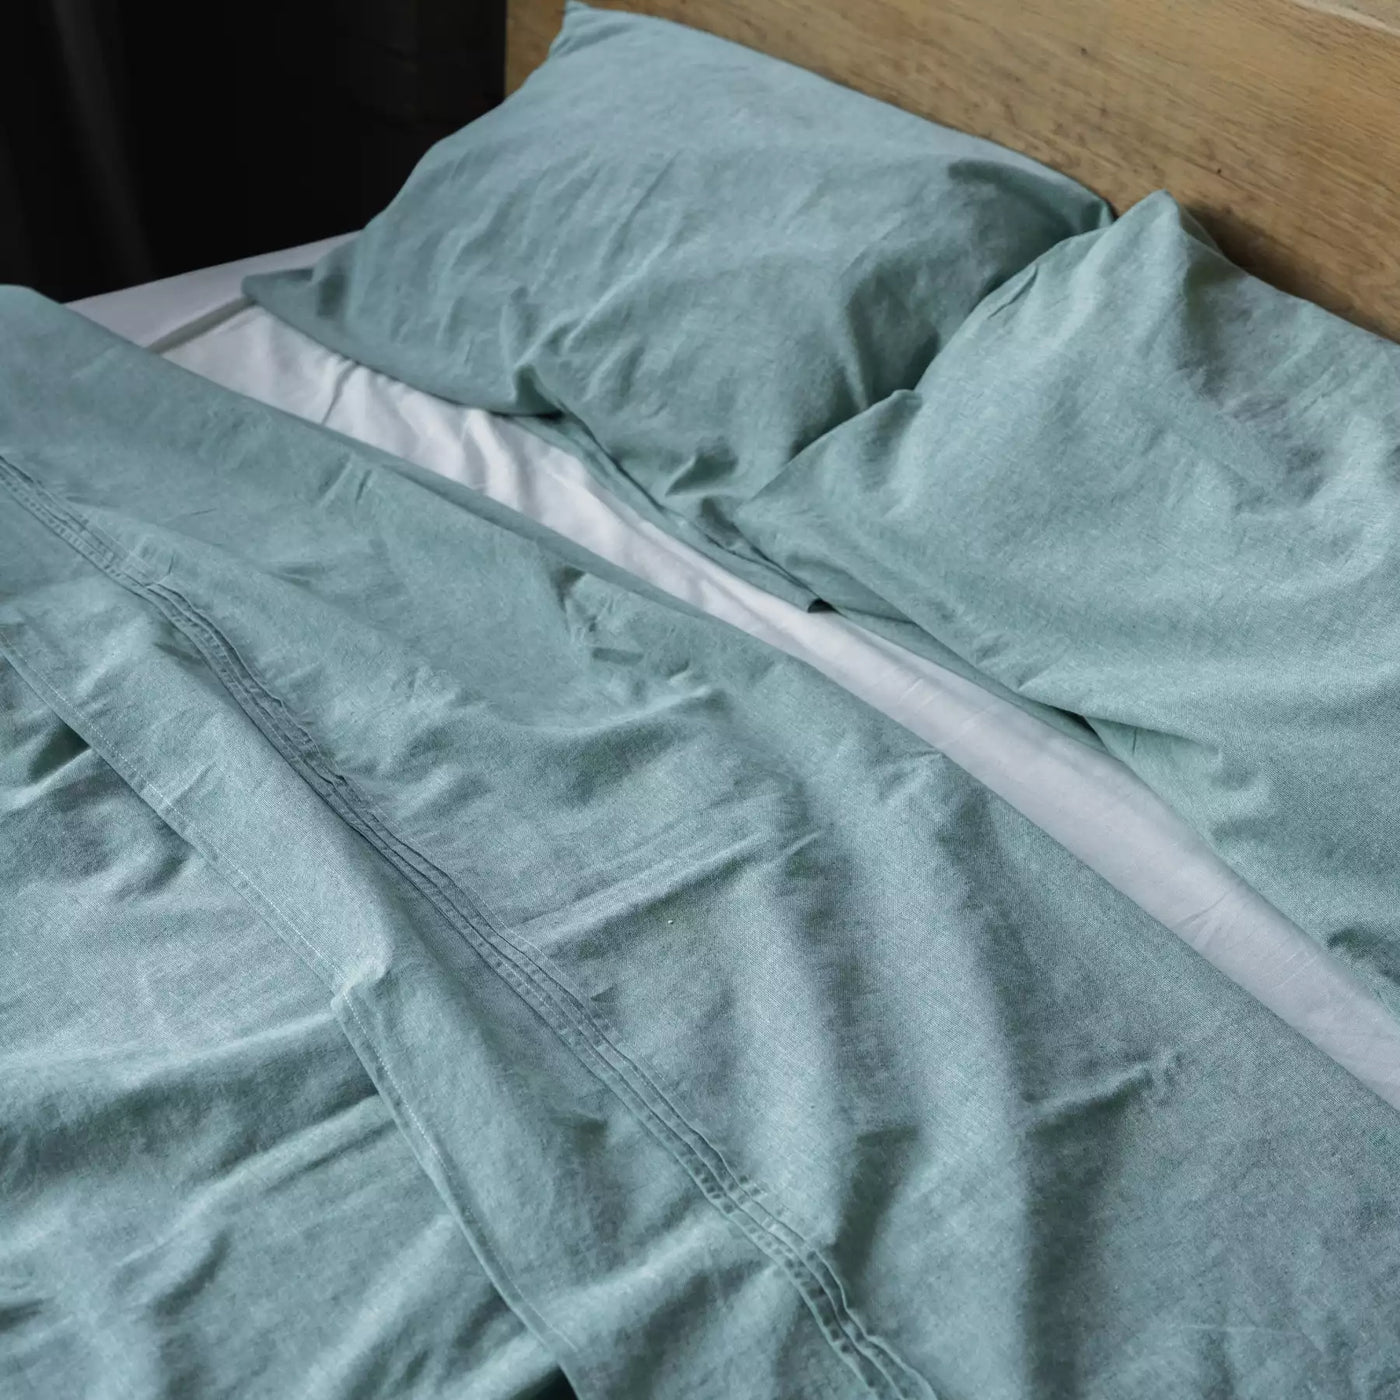 Leinen und Baumwolle Bettwäsche Set mit Bettbezug 135x200 Mint Melange